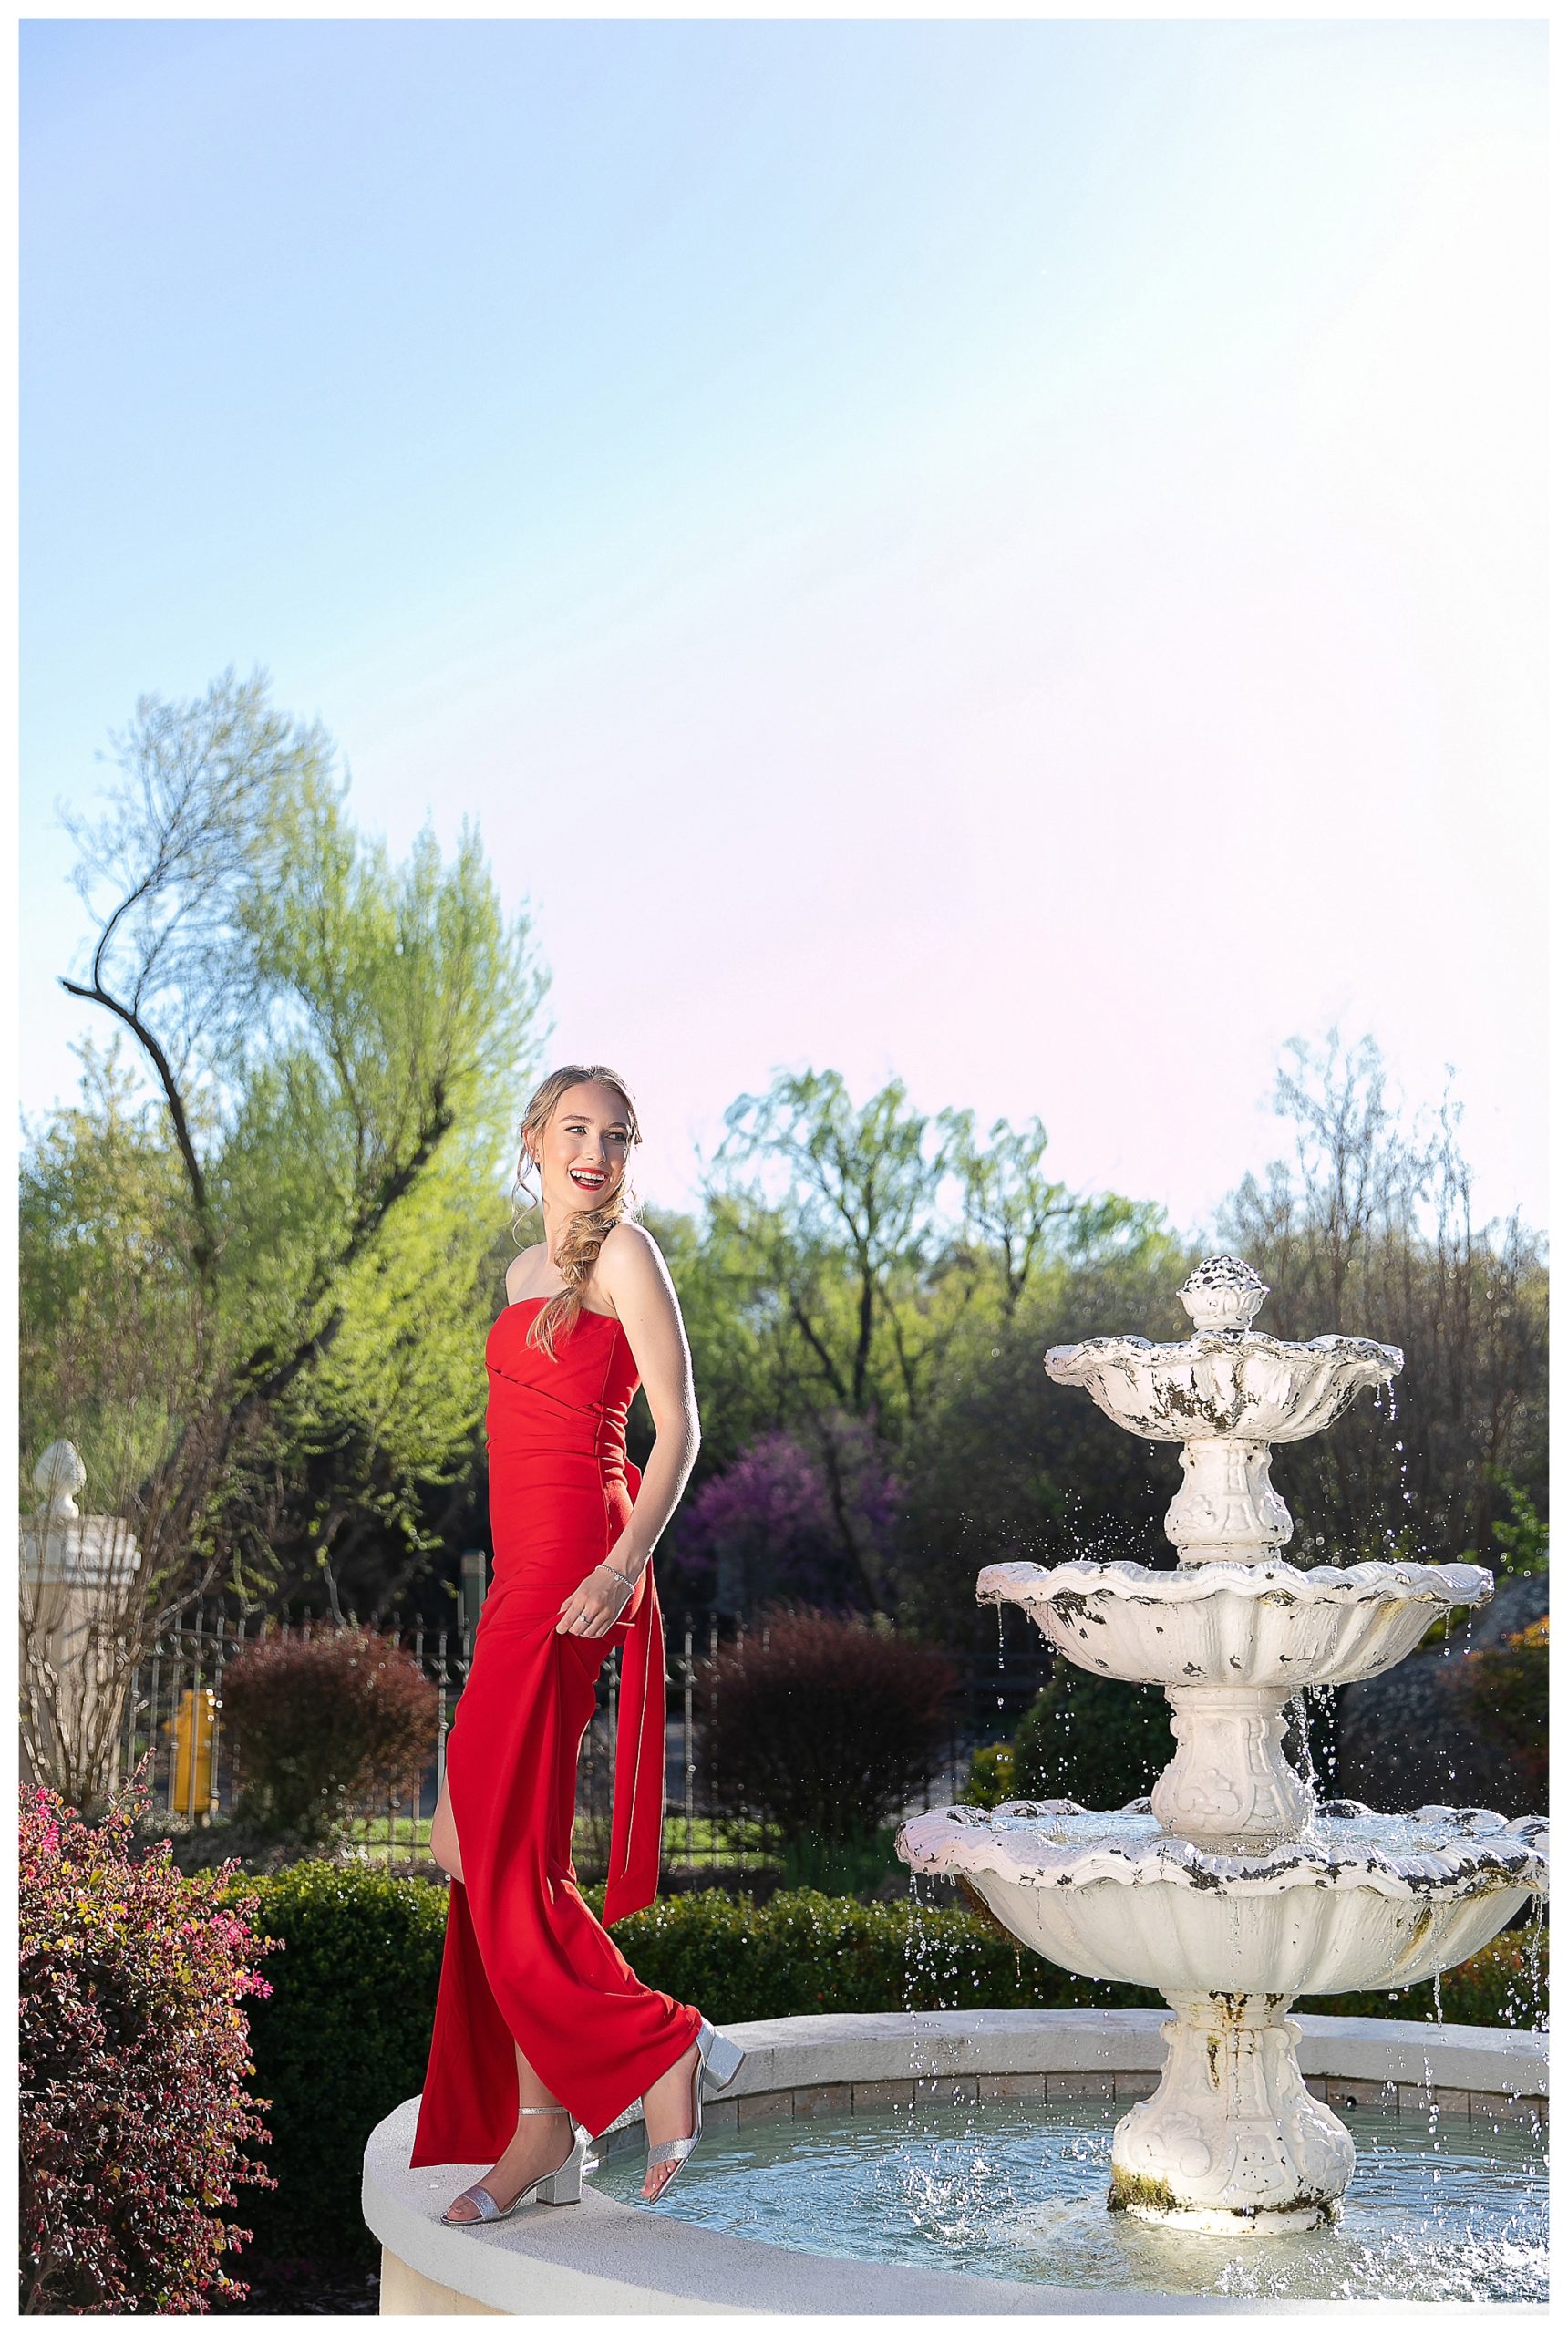 Senior high school girl in red dress